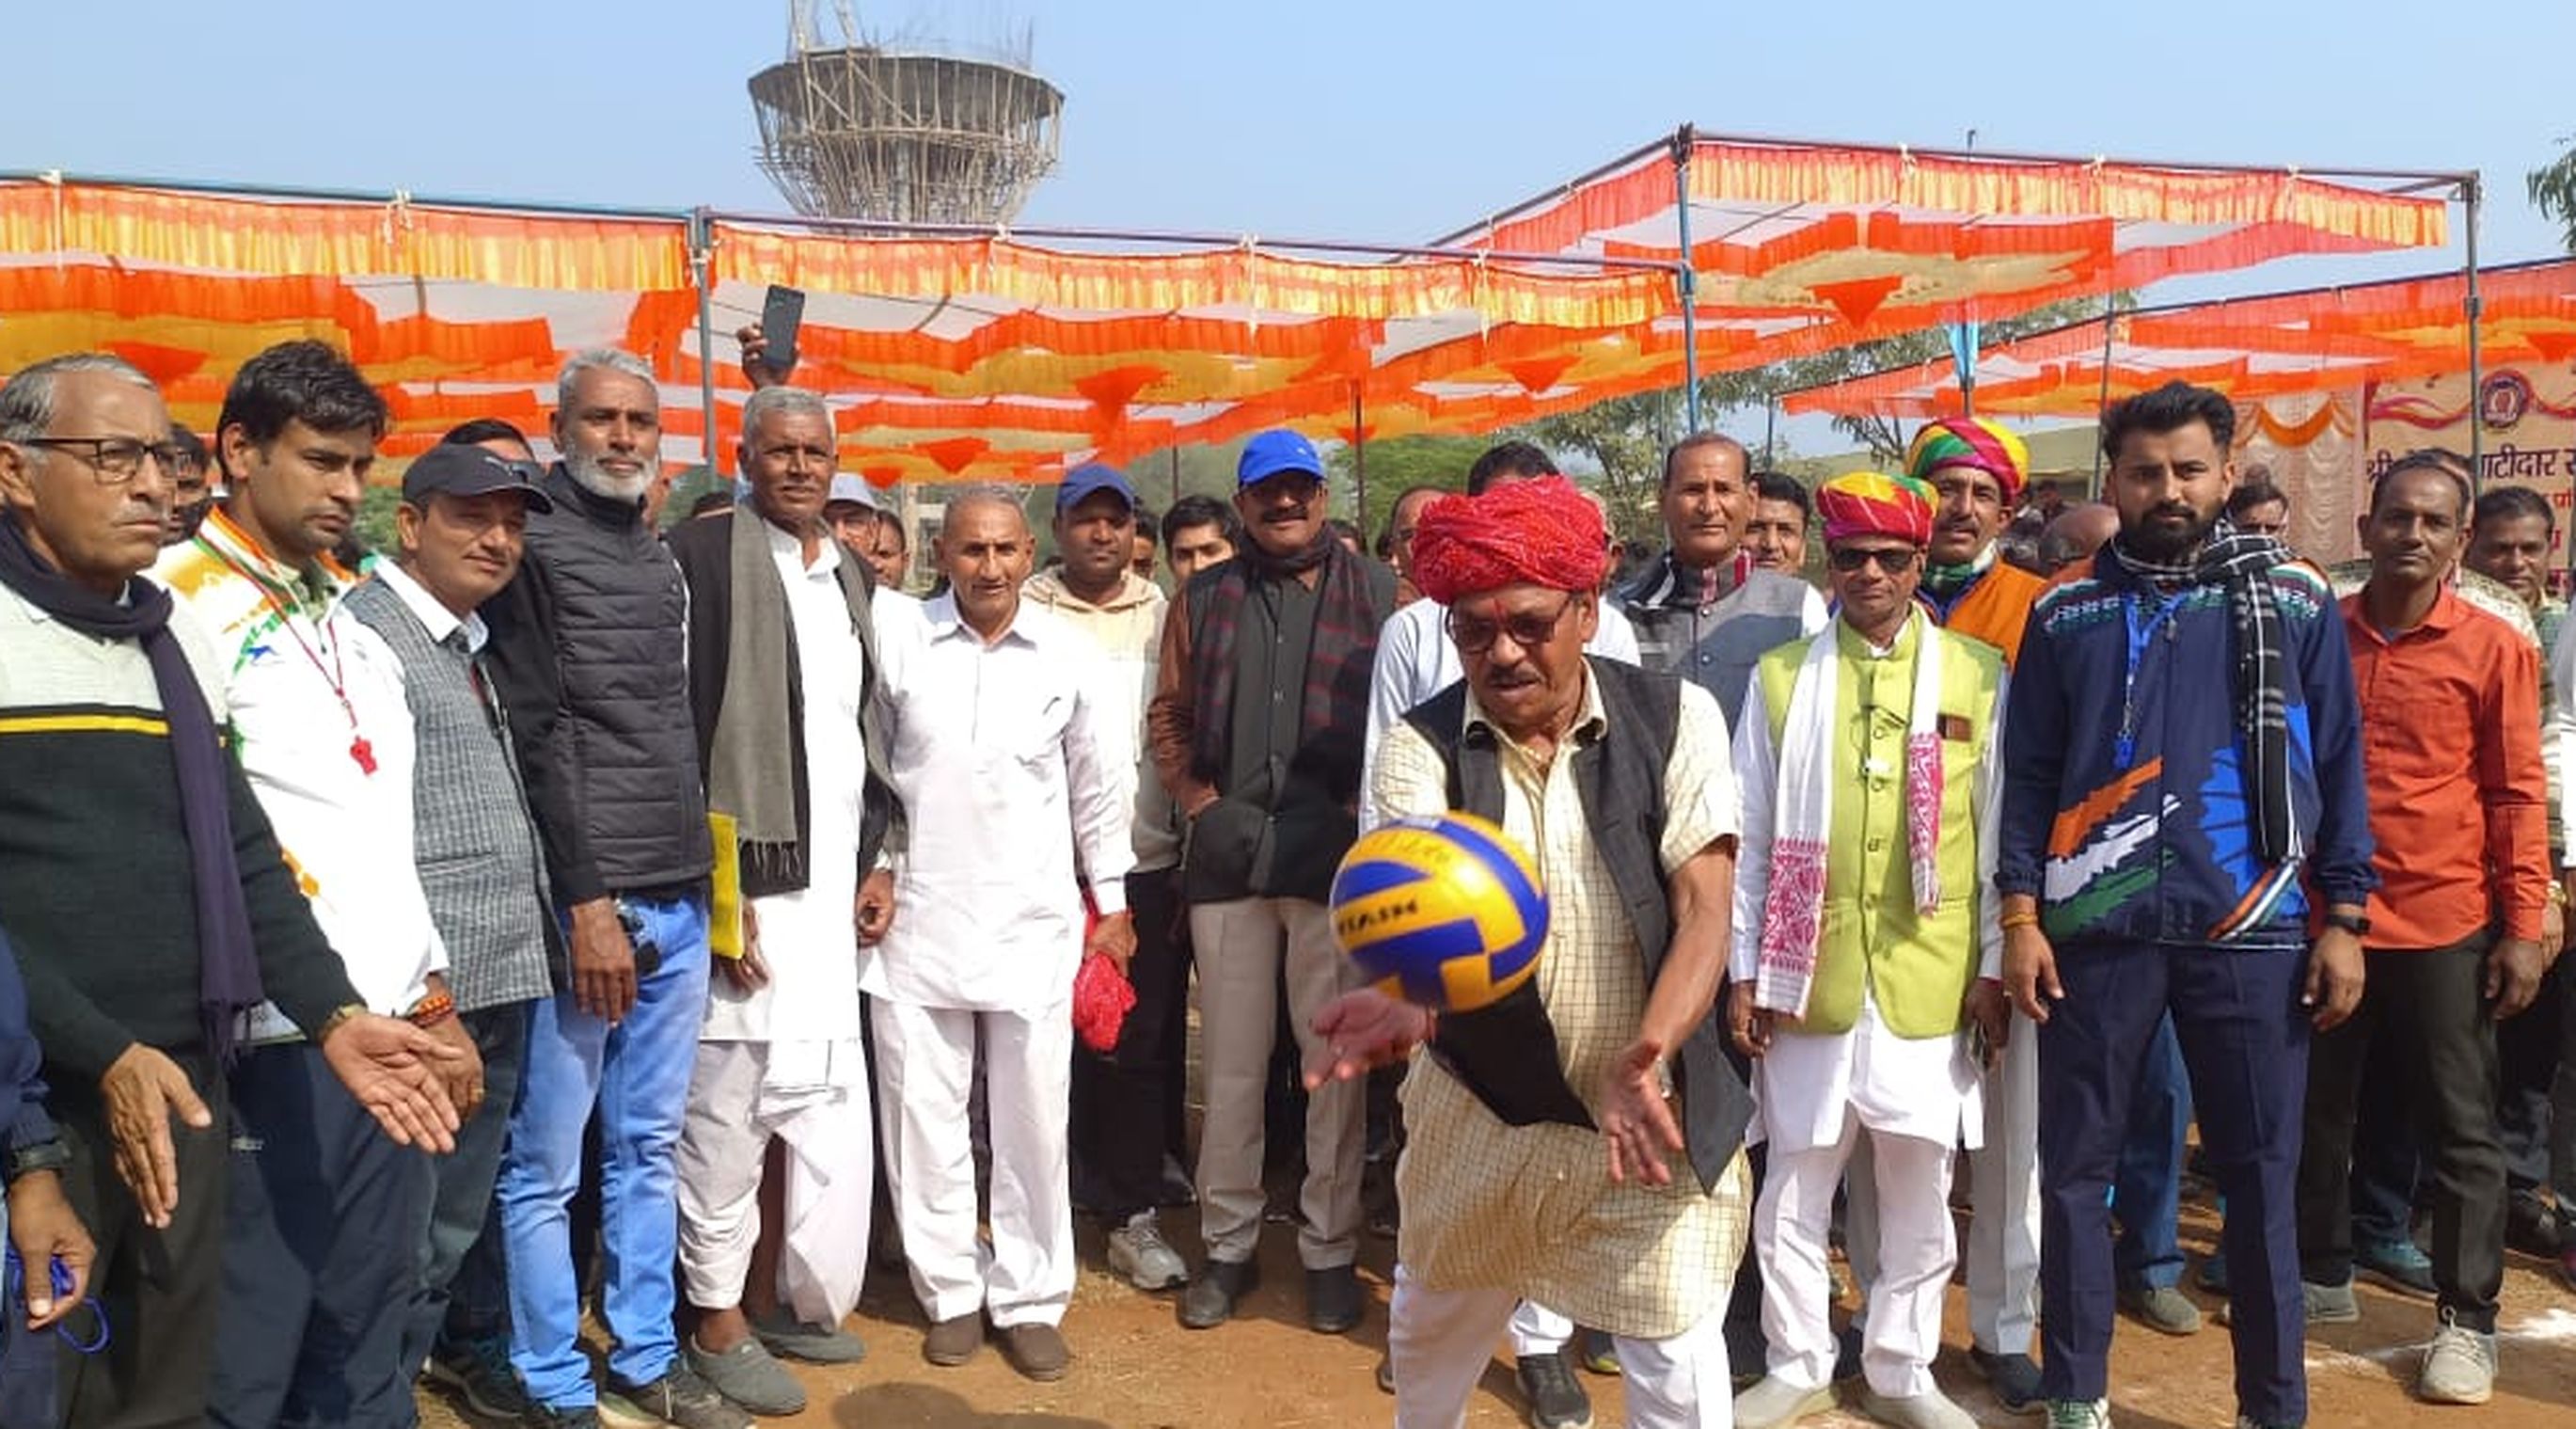 गुजराती लेउवा पाटीदार समाज की दो दिवसीय खेलकूद प्रतियोगिता शुरू